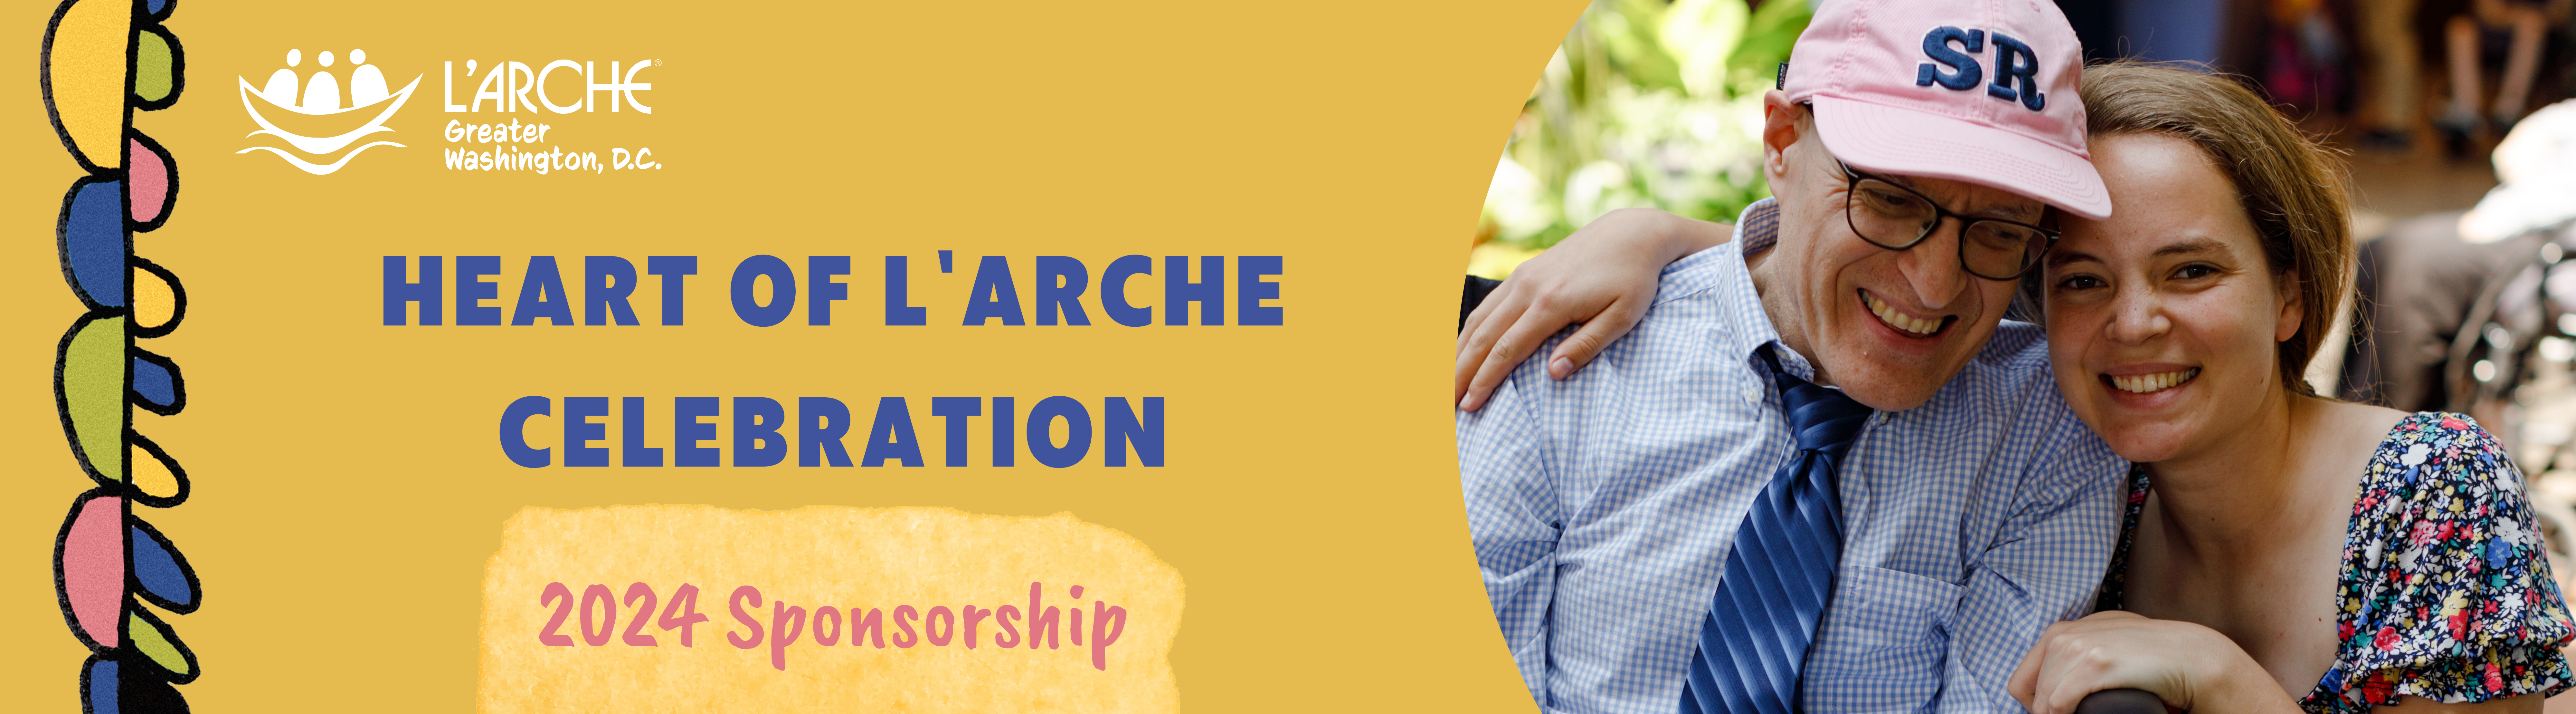 Heart of L'Arche Celebration 2024 Sponsorship